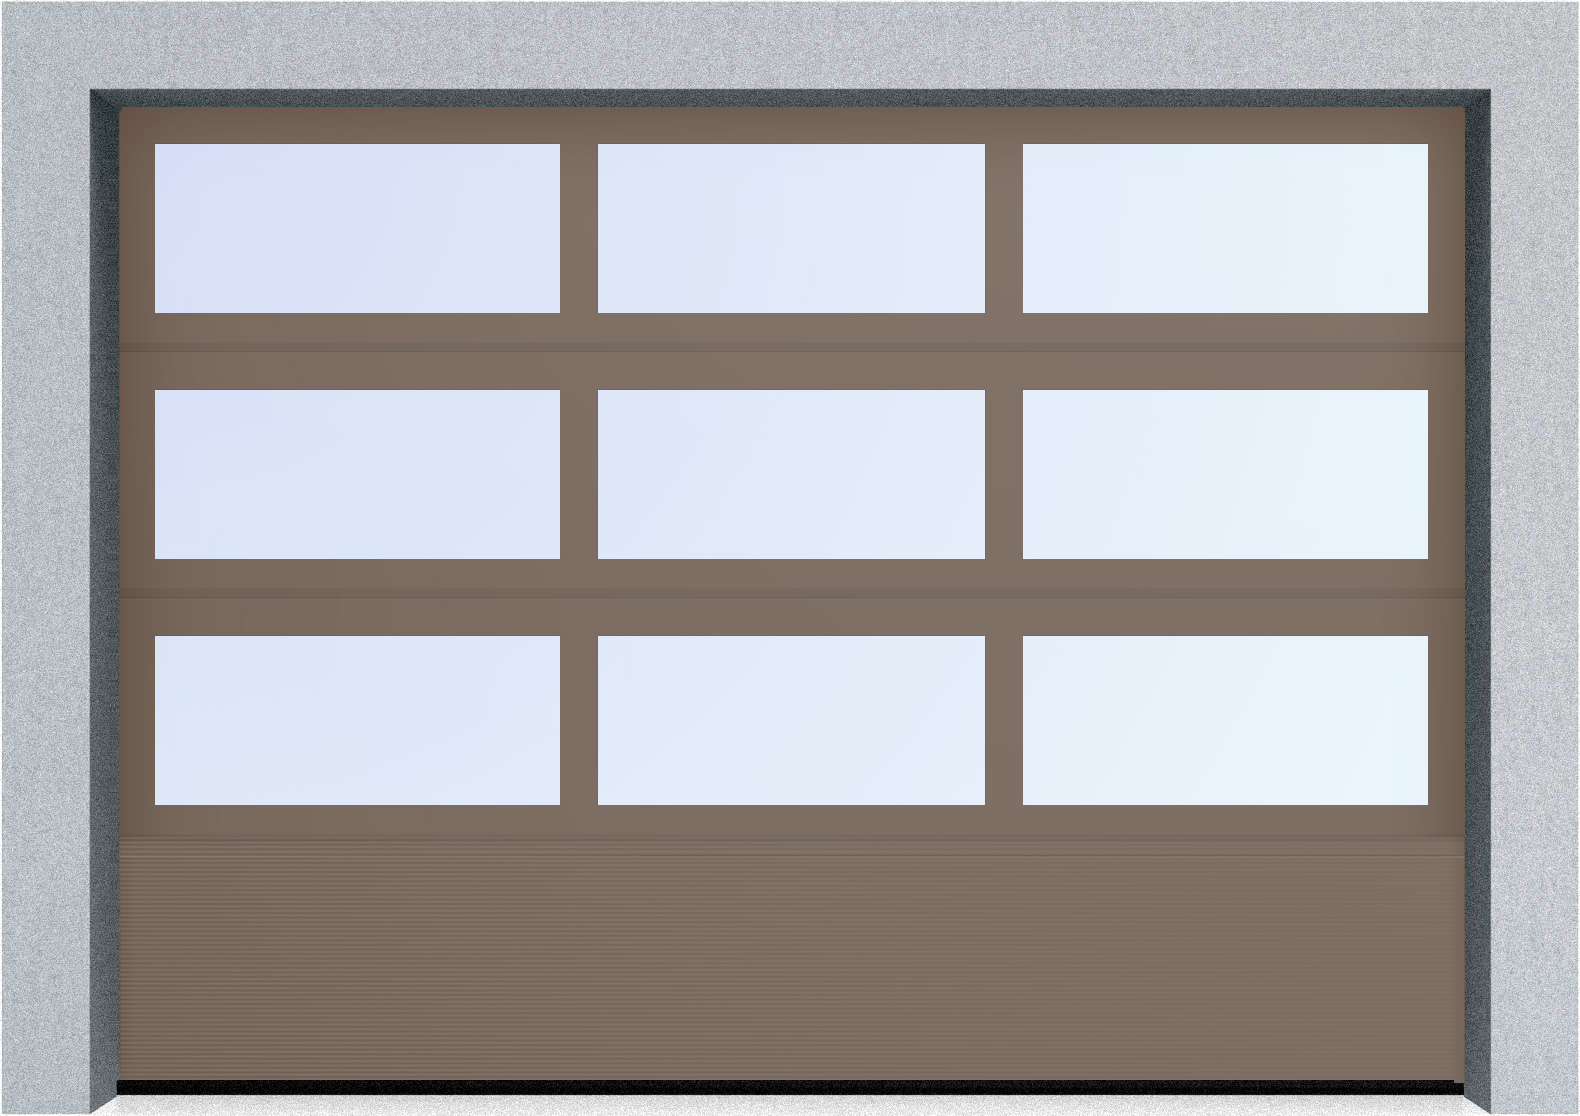  Секционные панорамные ворота серии AluTrend с комбинированным типом полотна (АЛПС) 2500х2375 нижняя панель S-гофр, Микроволна стандартные цвета, фото 11 